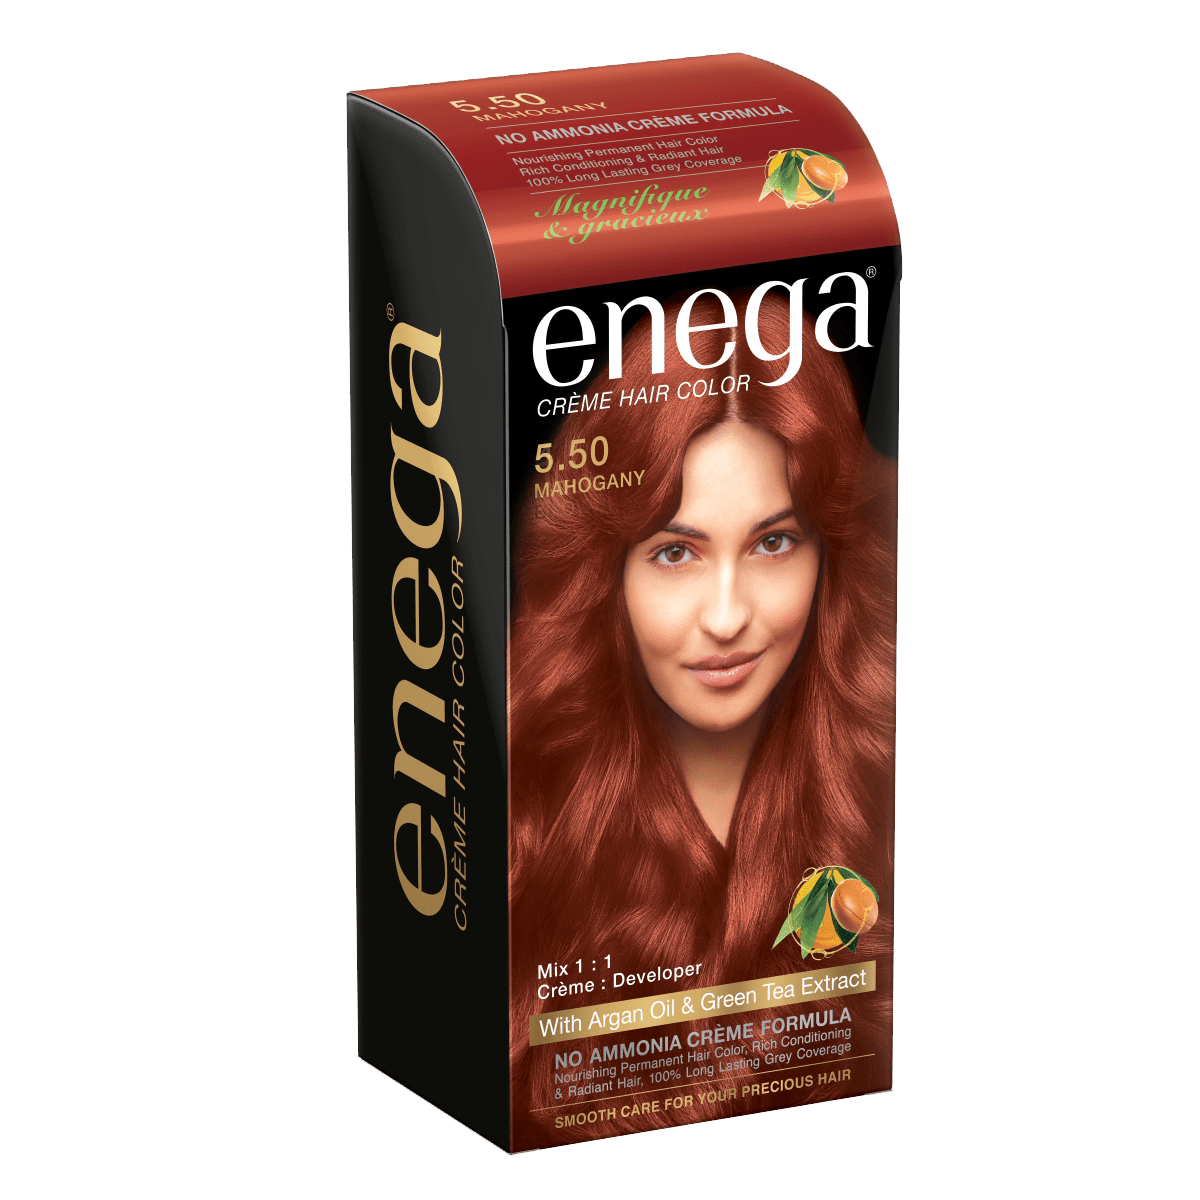 Enega Creme Hair Color – Mahogany – Prem Green Pvt Ltd